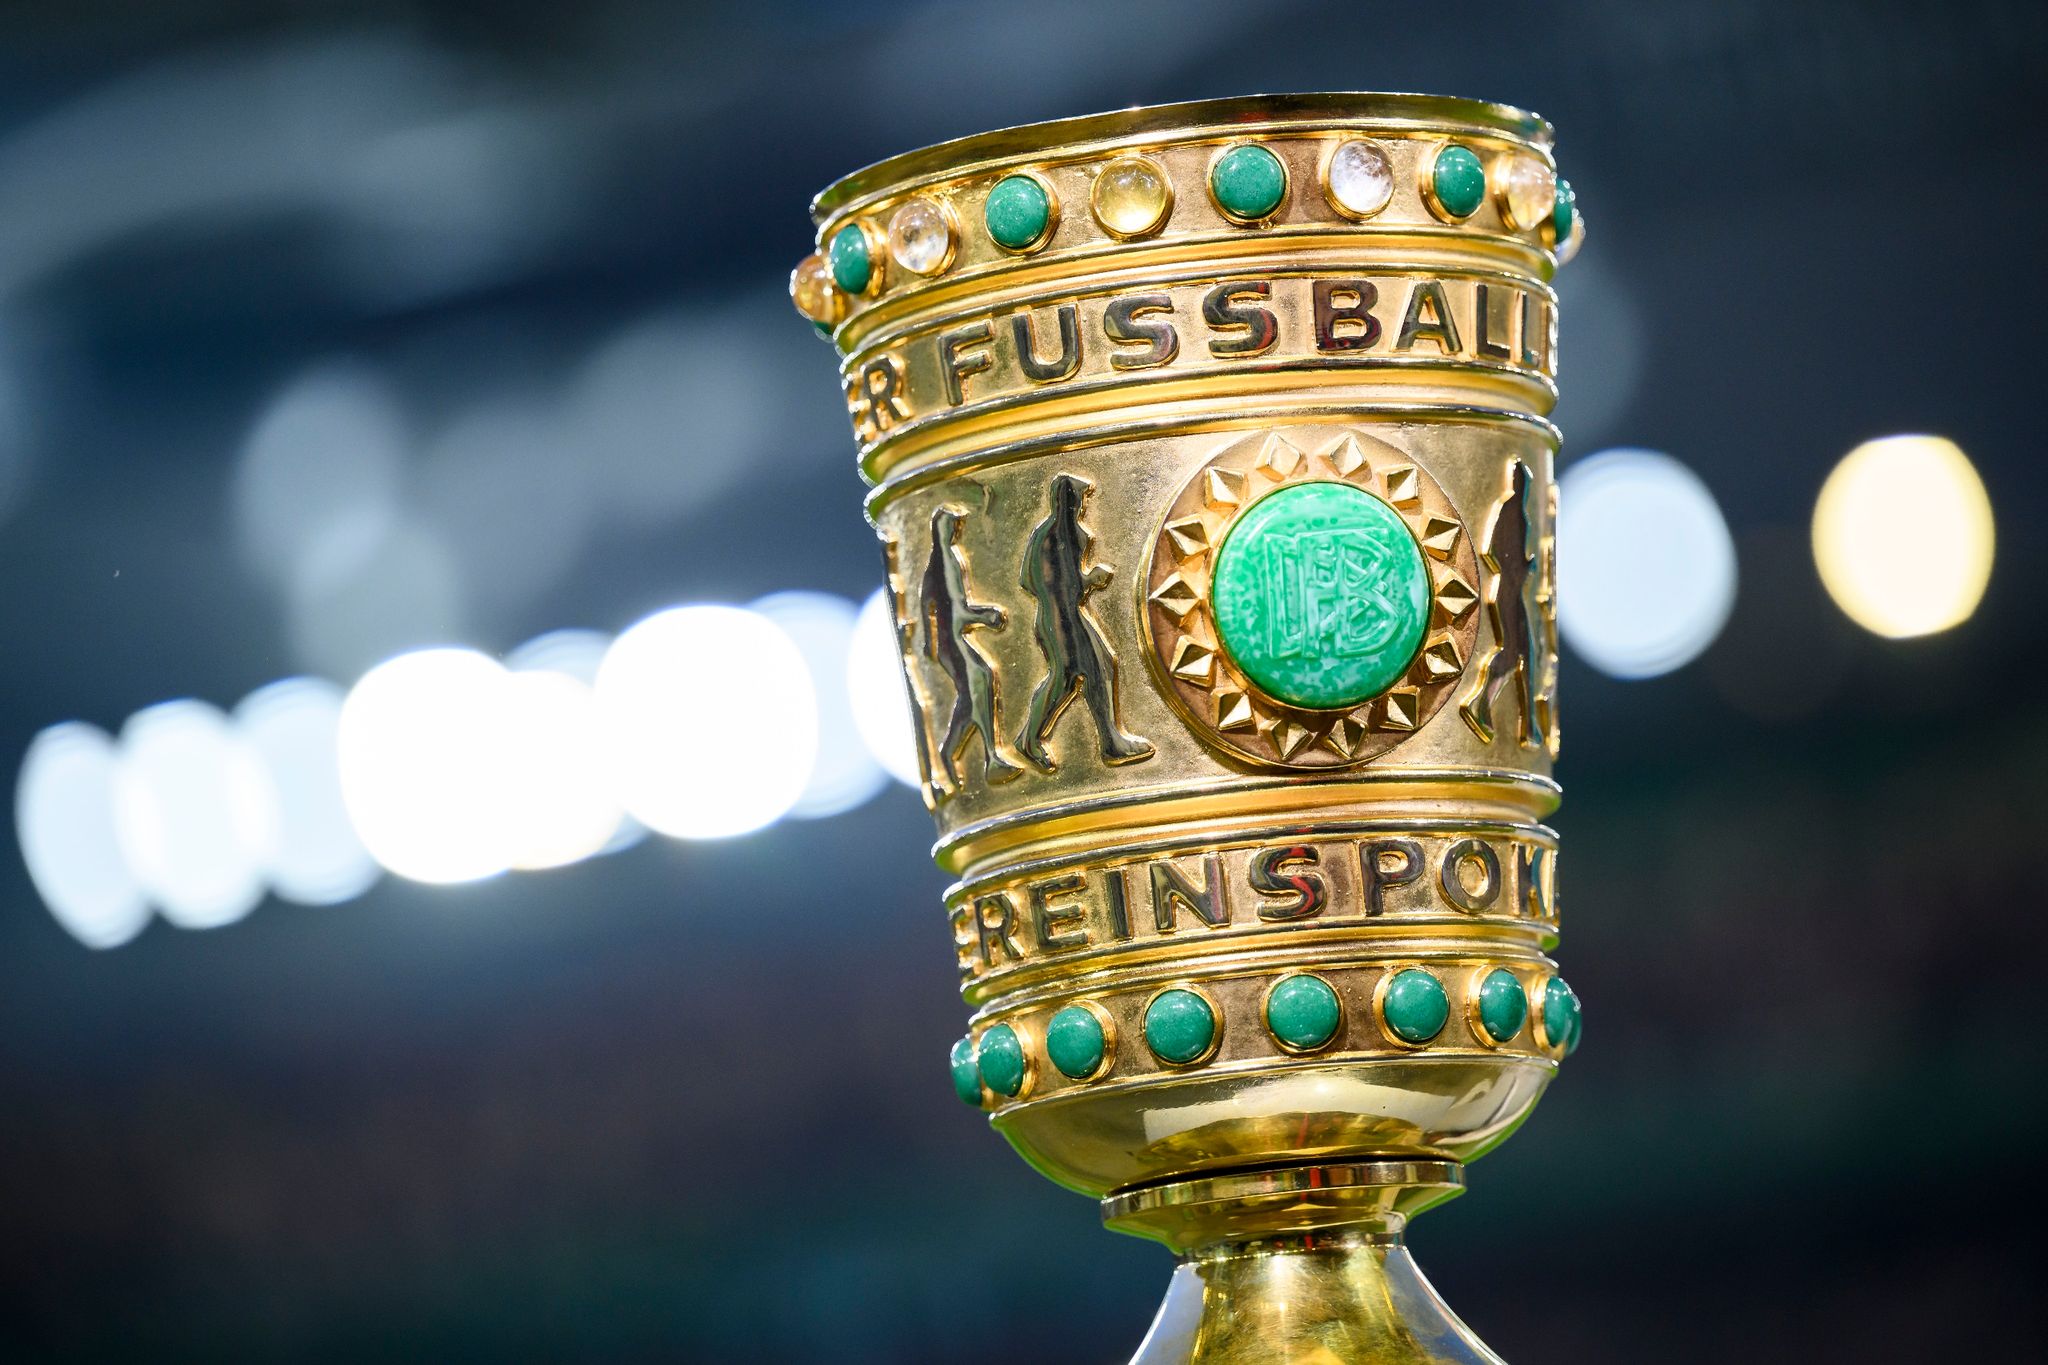 DFB-Pokal Prämien und TV-Zeiten